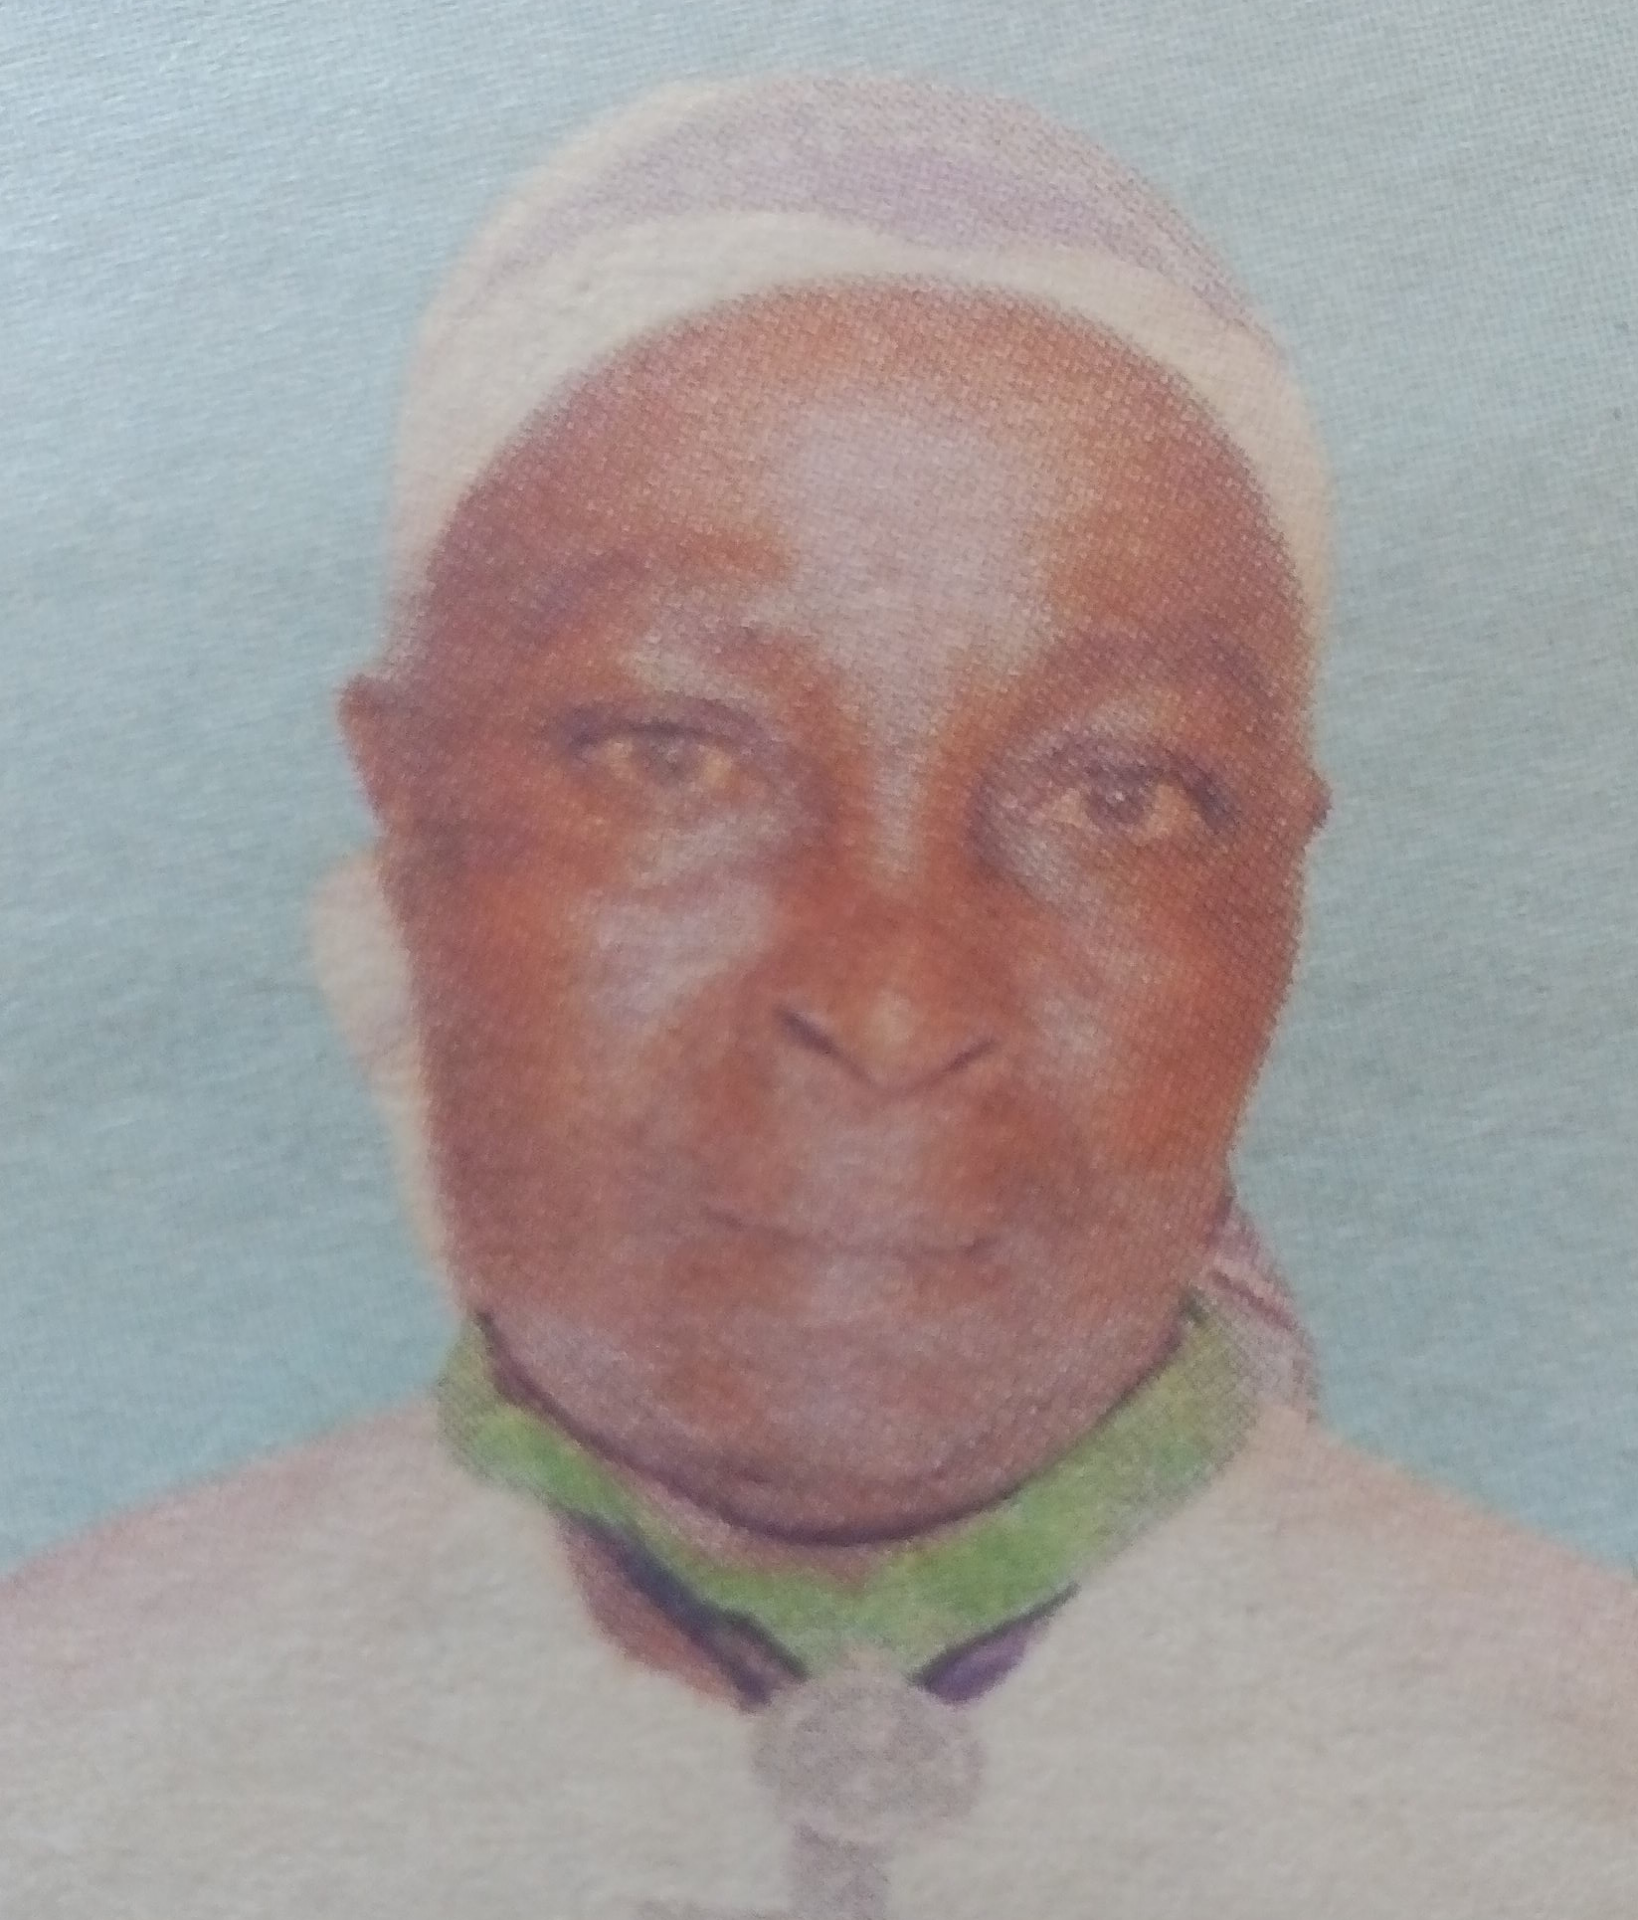 Obituary Image of Teresia Wanjiru Maichuhie